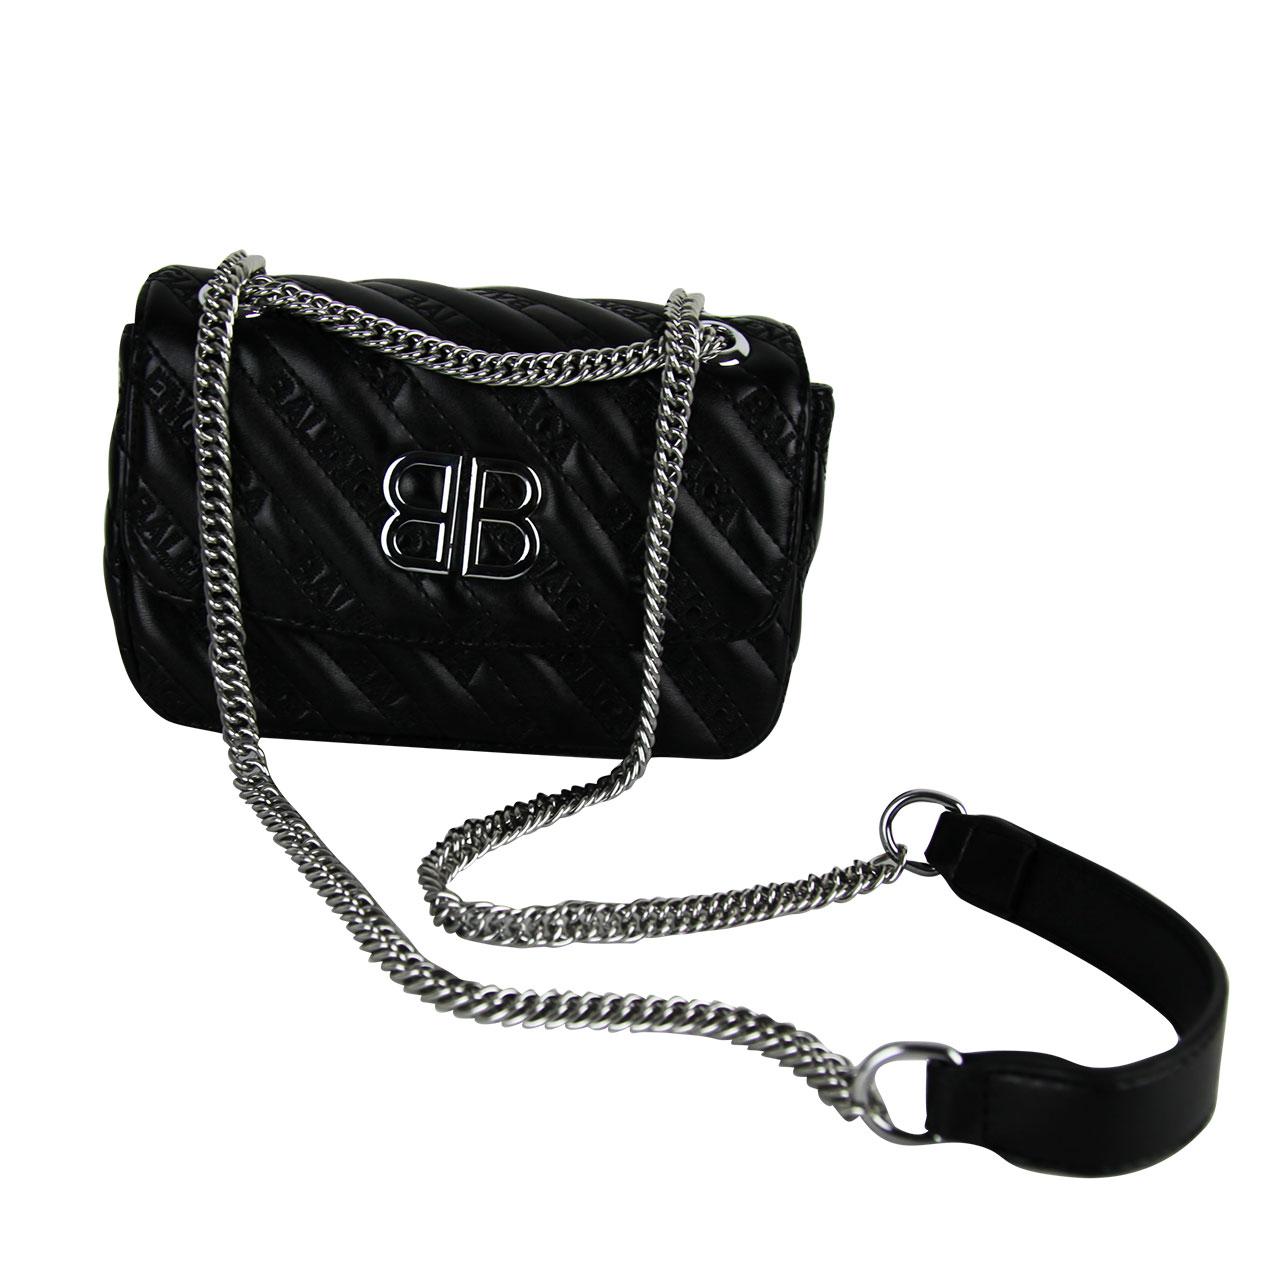 VILLCASE 3pcs Bag Chain Handbag Strap Crossbody Strap Straps for Handbags  Purse Chain Strap Black Purse Strap Crossbody Tote Metal Wallet Purse  Chains